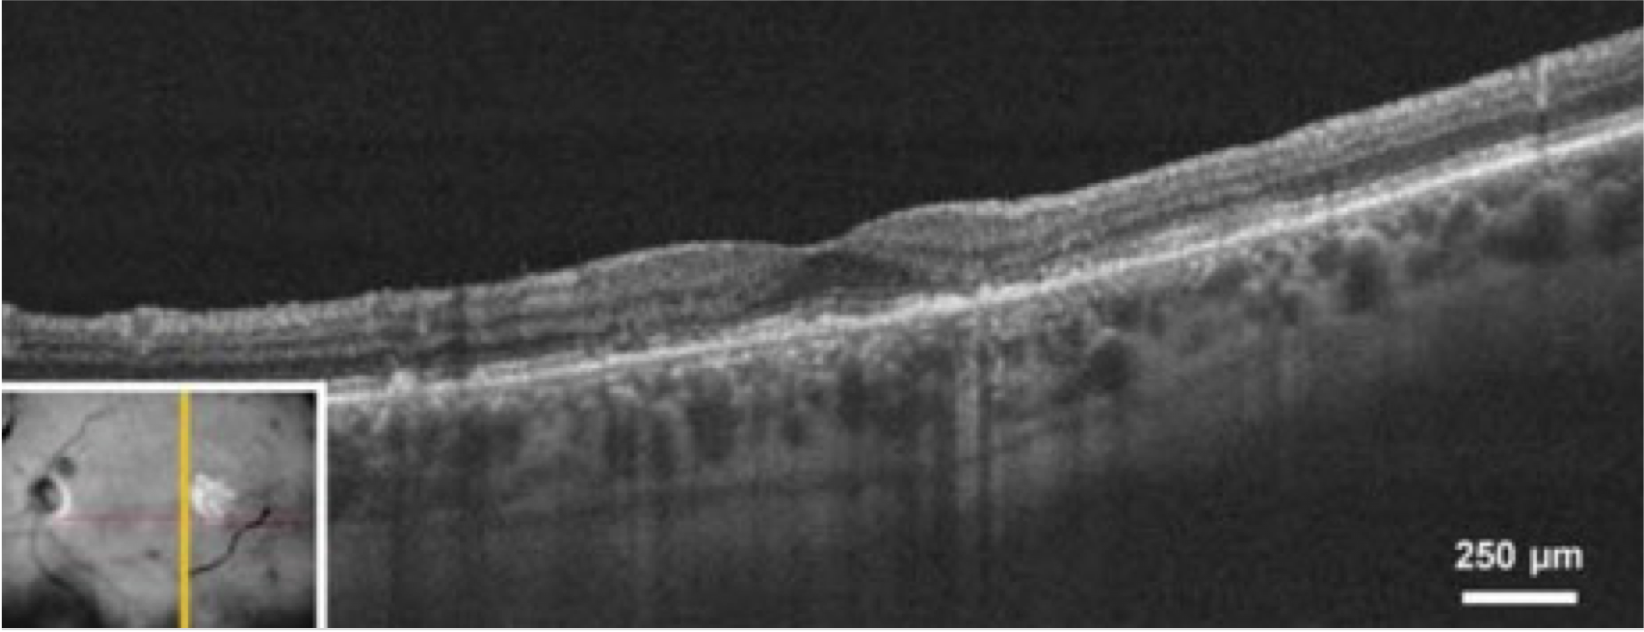 dryAMD.eu Imagen de tomografía de coherencia óptica (TCO) de un ojo en un paciente con atrofia geográfica.10